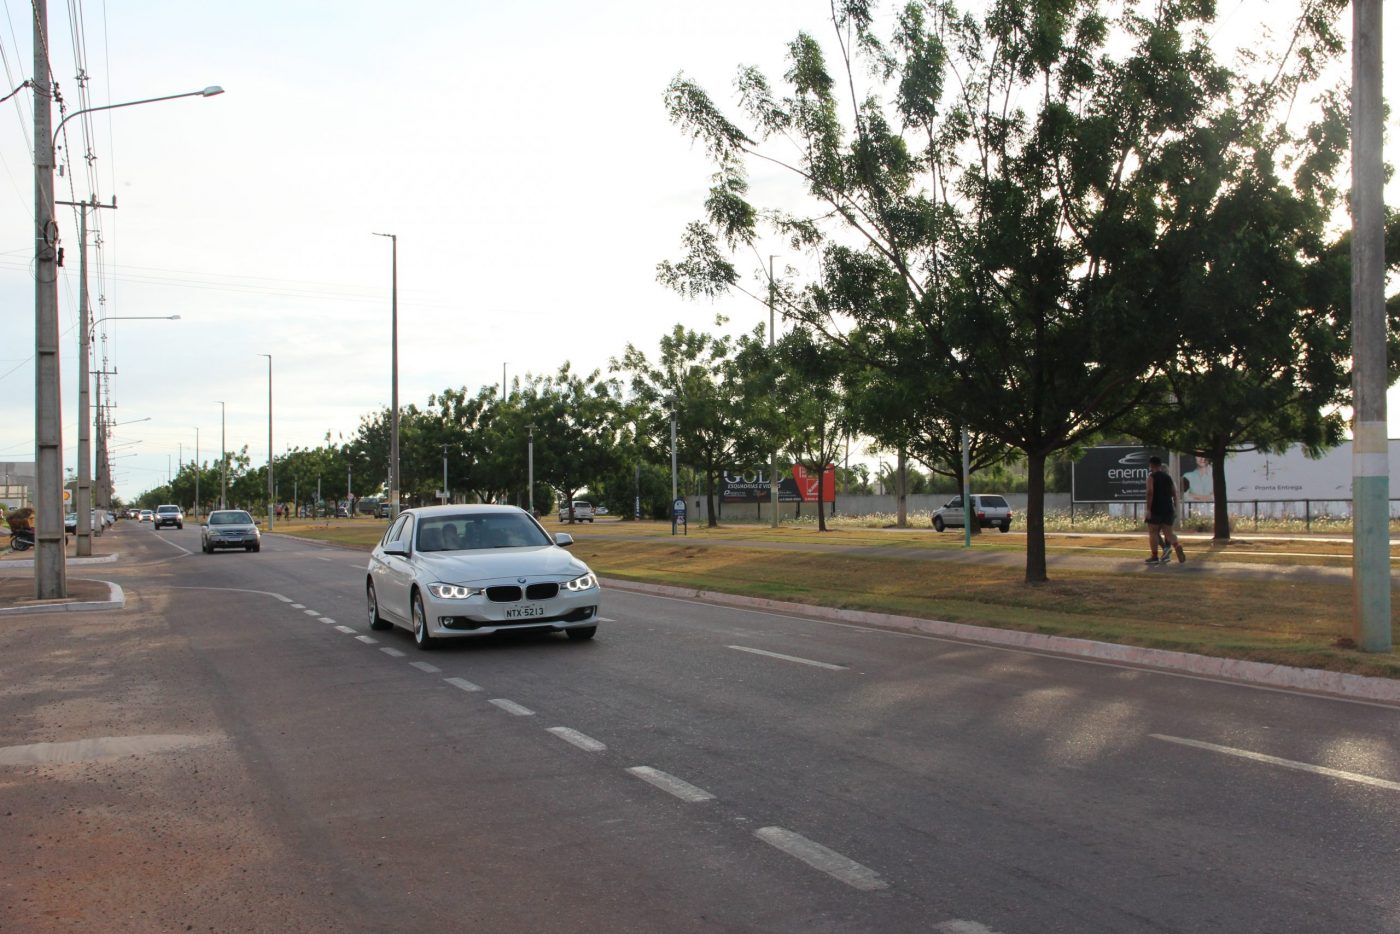 Avenida central de Sinop. Vias são asfaltadas e por elas cruzam veículos importados, embora seja uma cidade agrícola. Foto Felipe Betim /Diálogo Chino